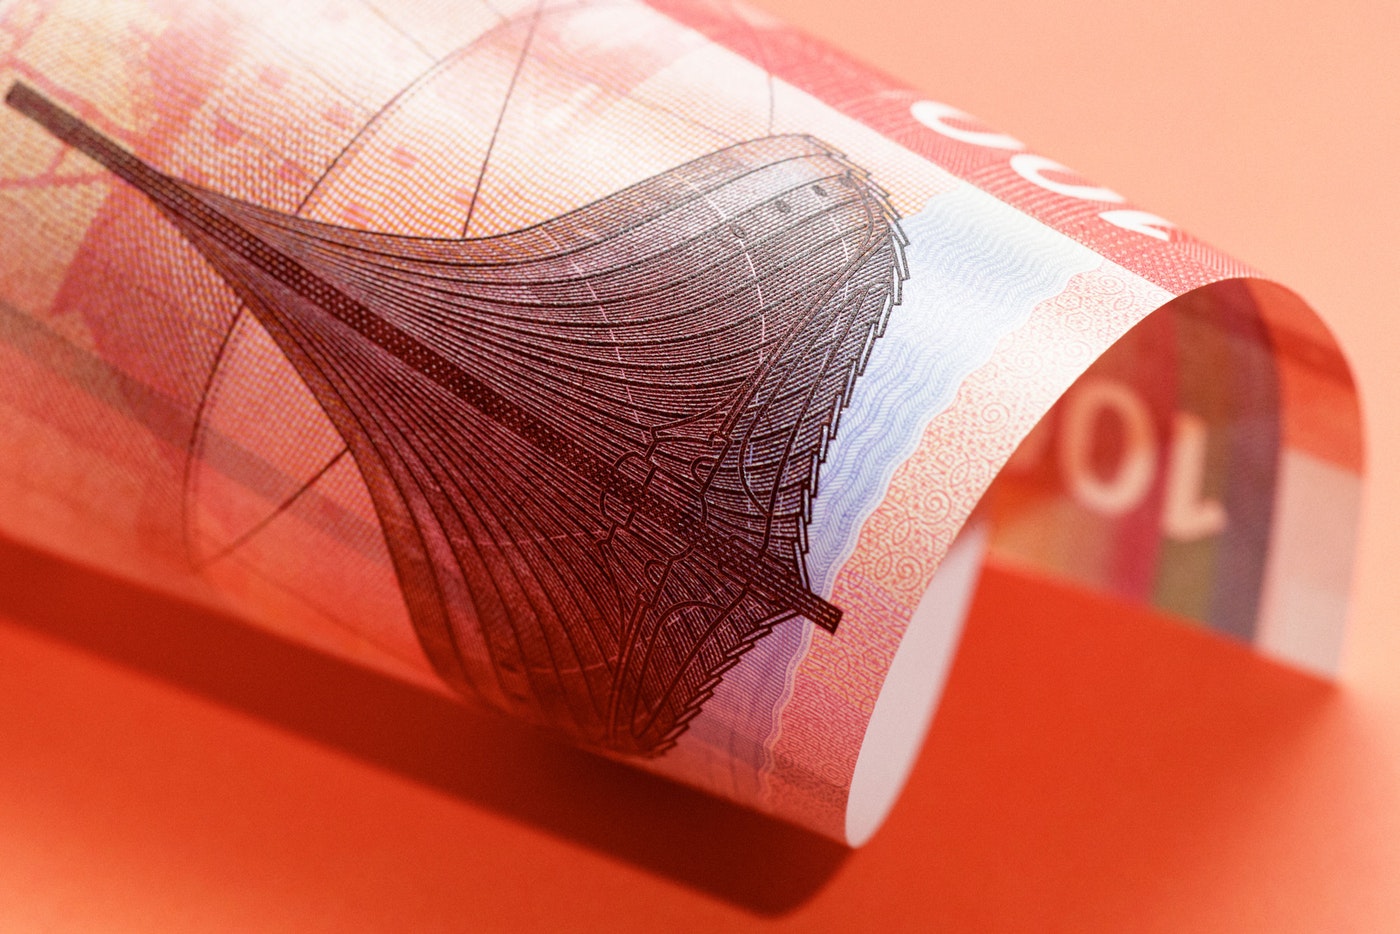 Norwegian Banknotes